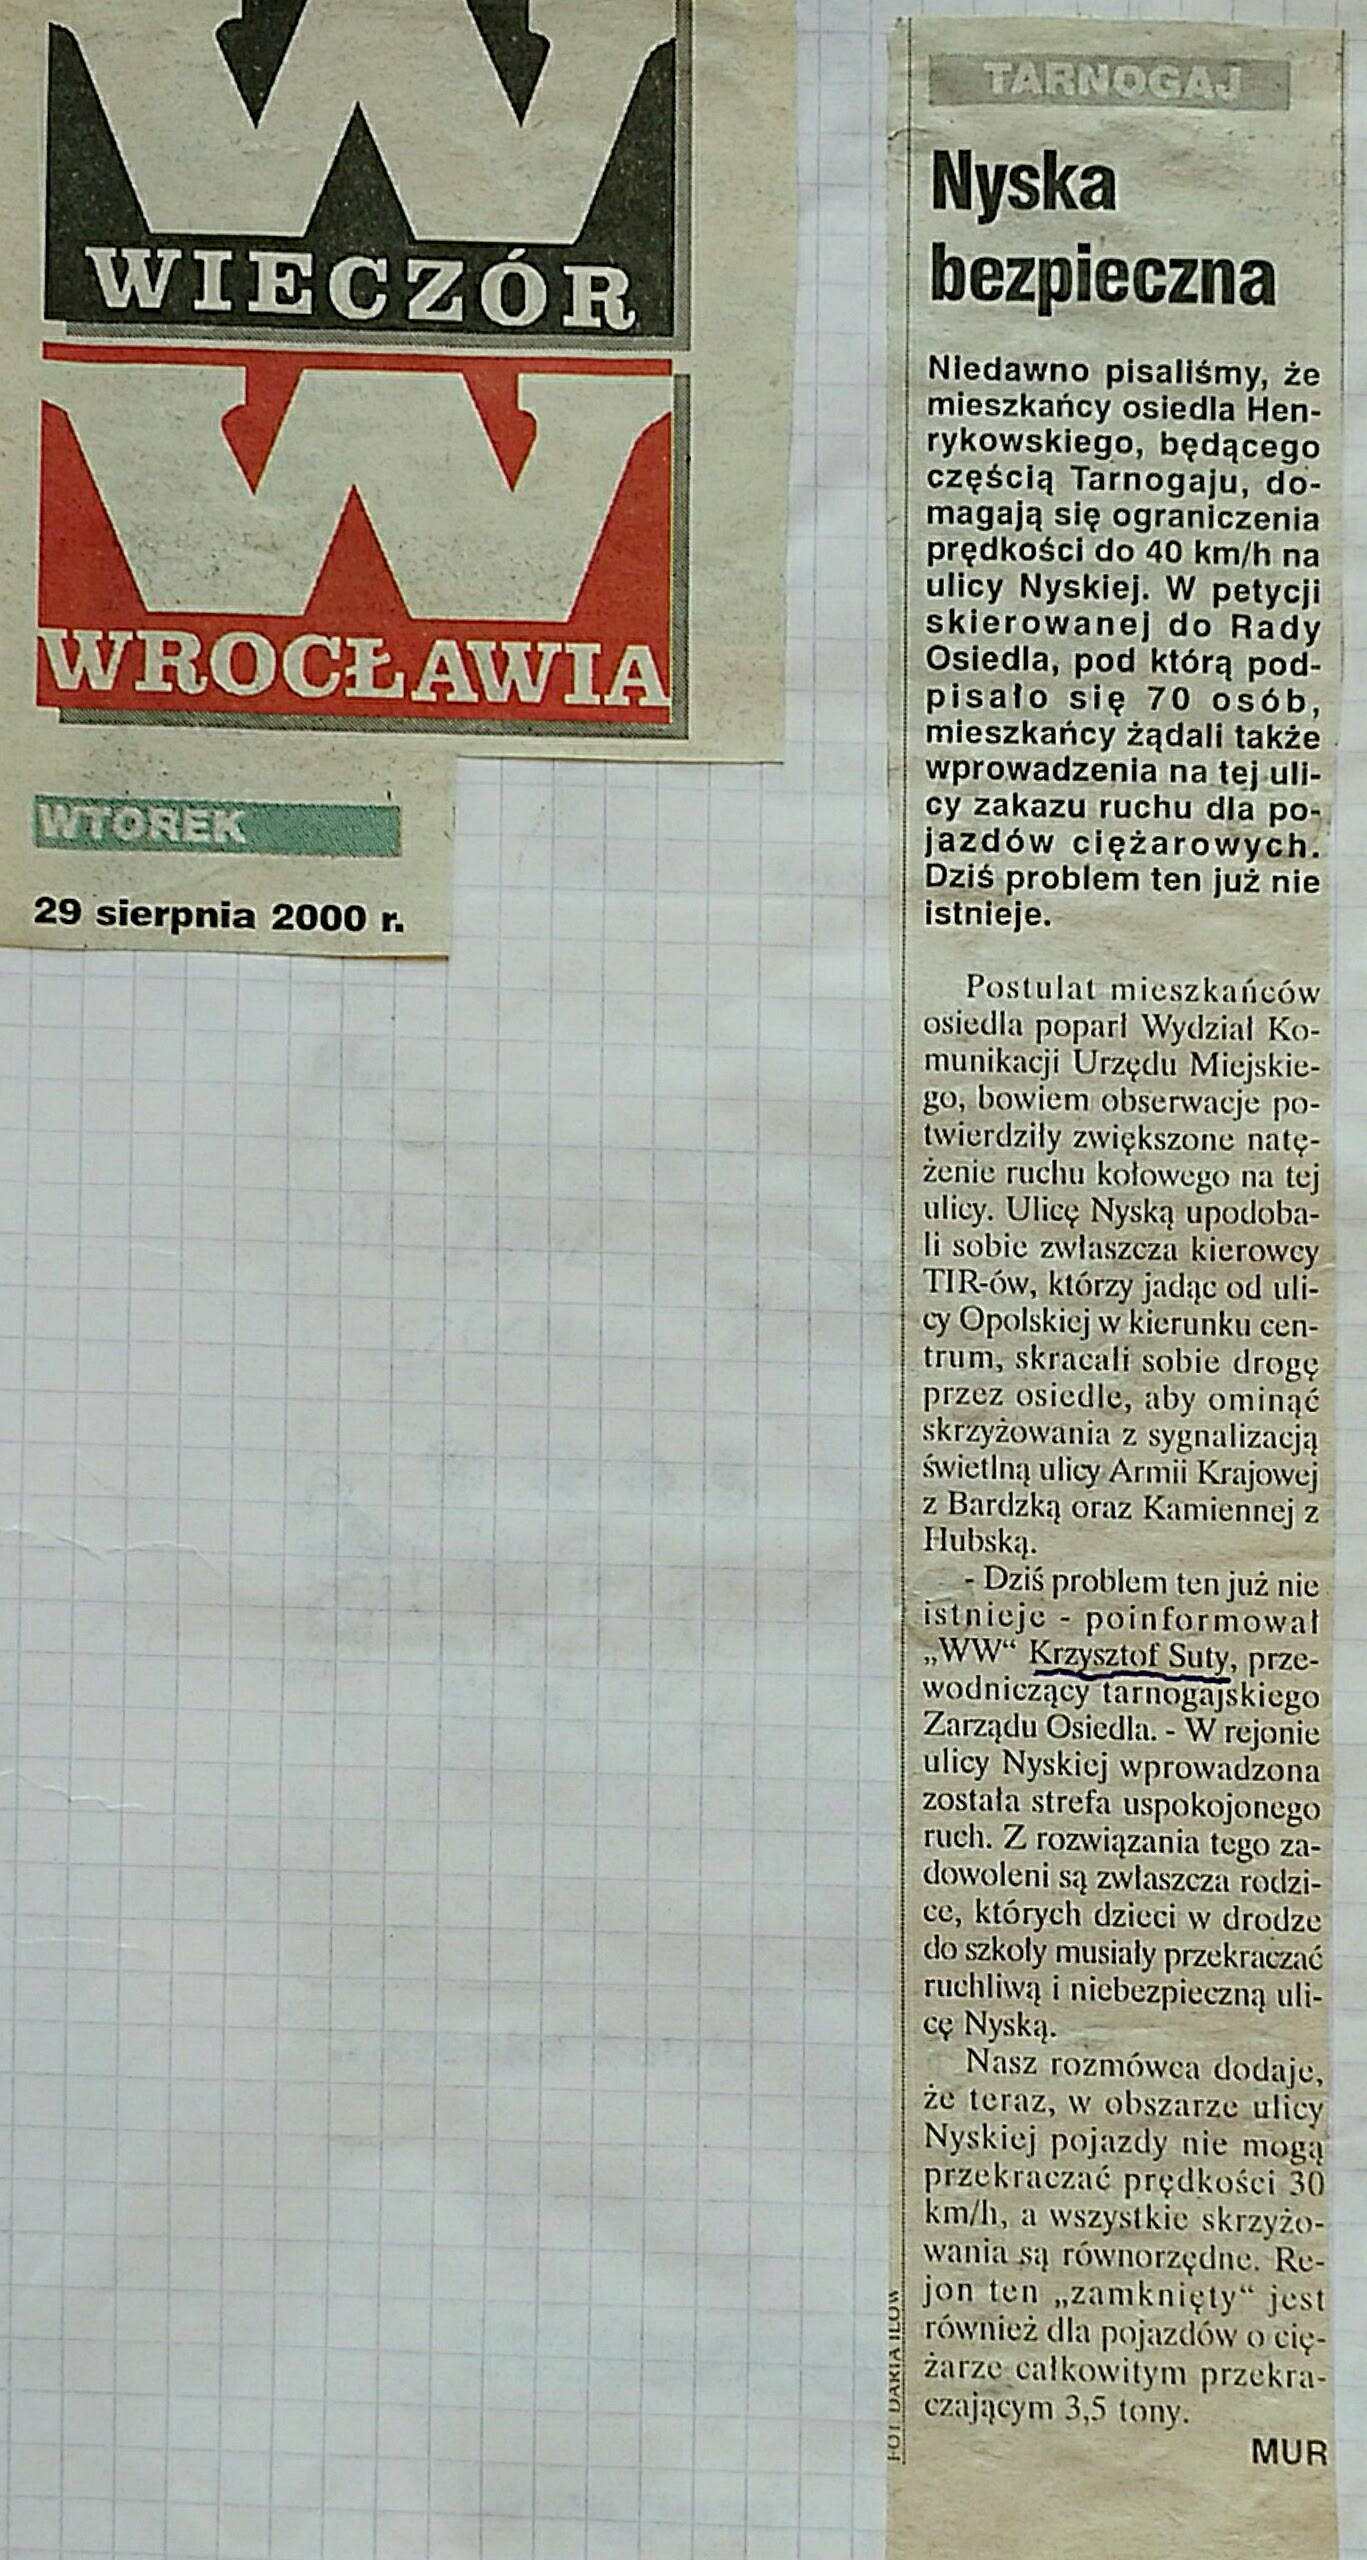 20 29 Sierpnia 2000 Wieczór Wrocławia